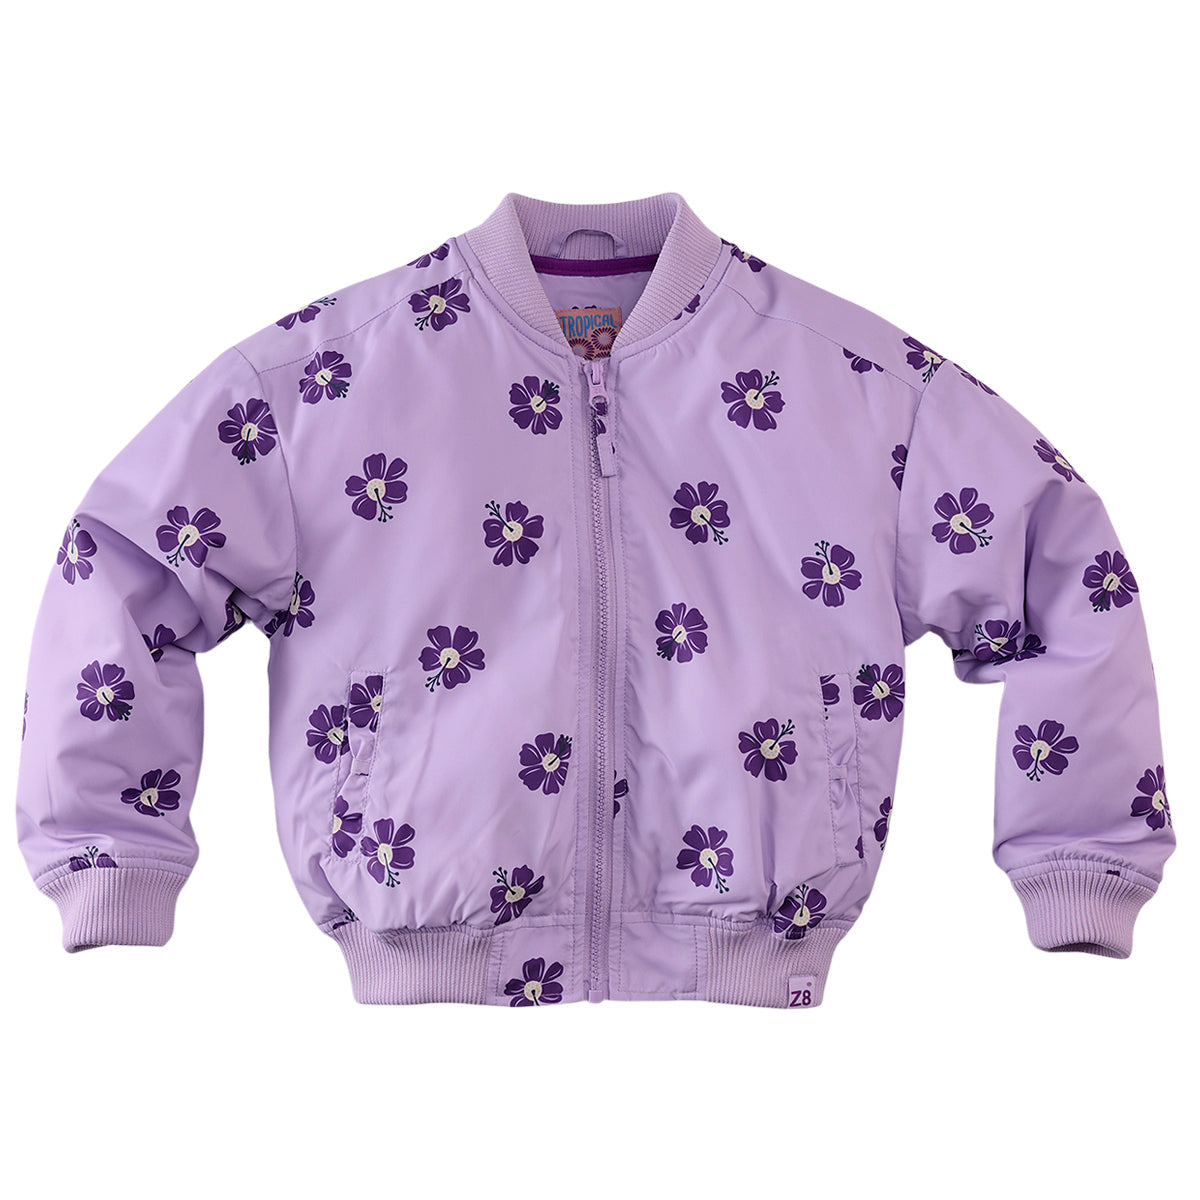 Meisjes Summer jacket Calista van Z8 in de kleur Lavender frost/AOP in maat 140-146.